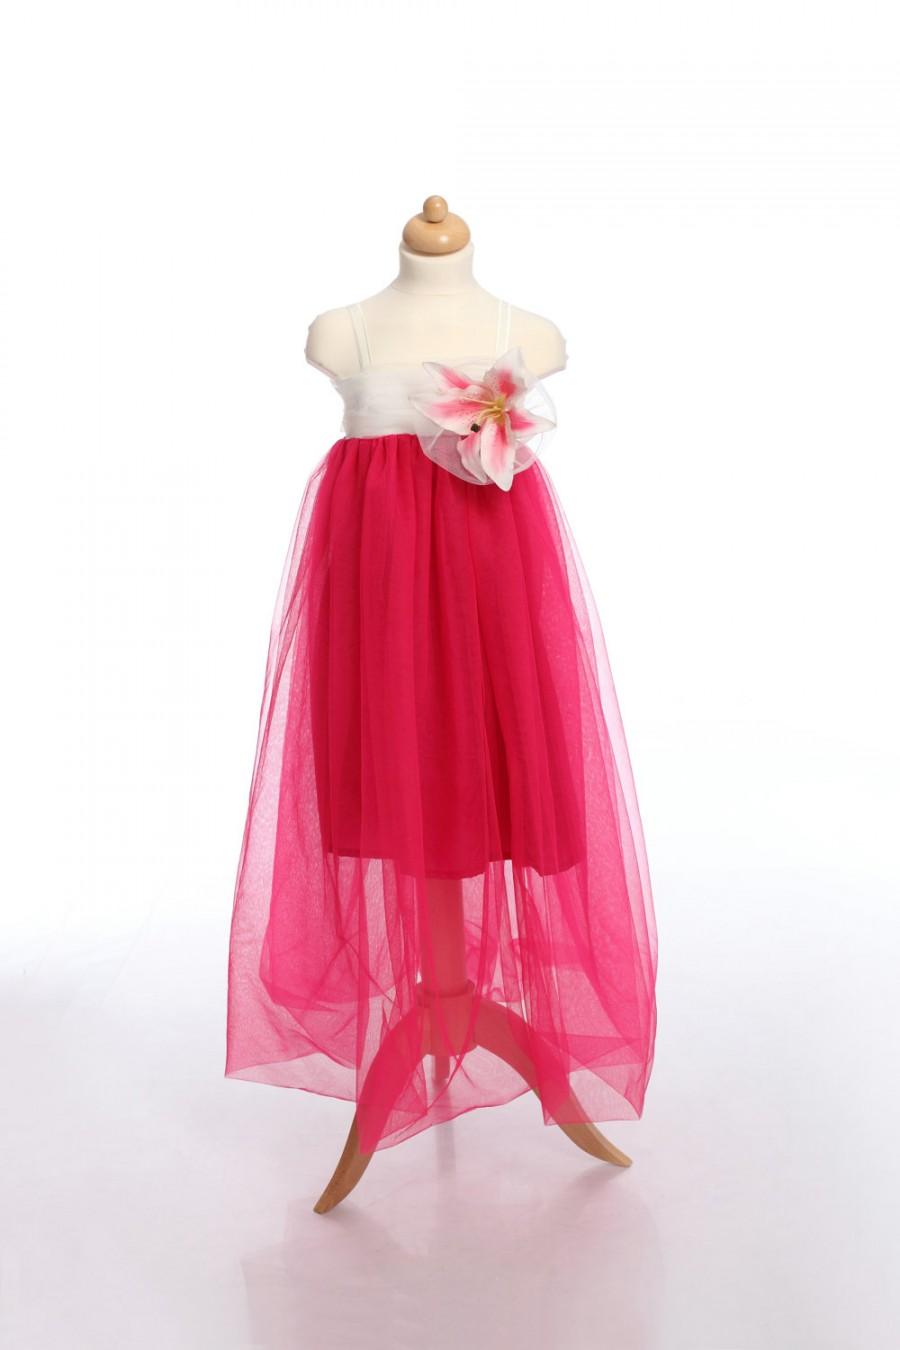 Mariage - Fuchsia Kid Dress, Flower Girl Dress, Tulle Toddler Dress, Girl Dress, Girl Gown, Birthday Dress, Fairy dress